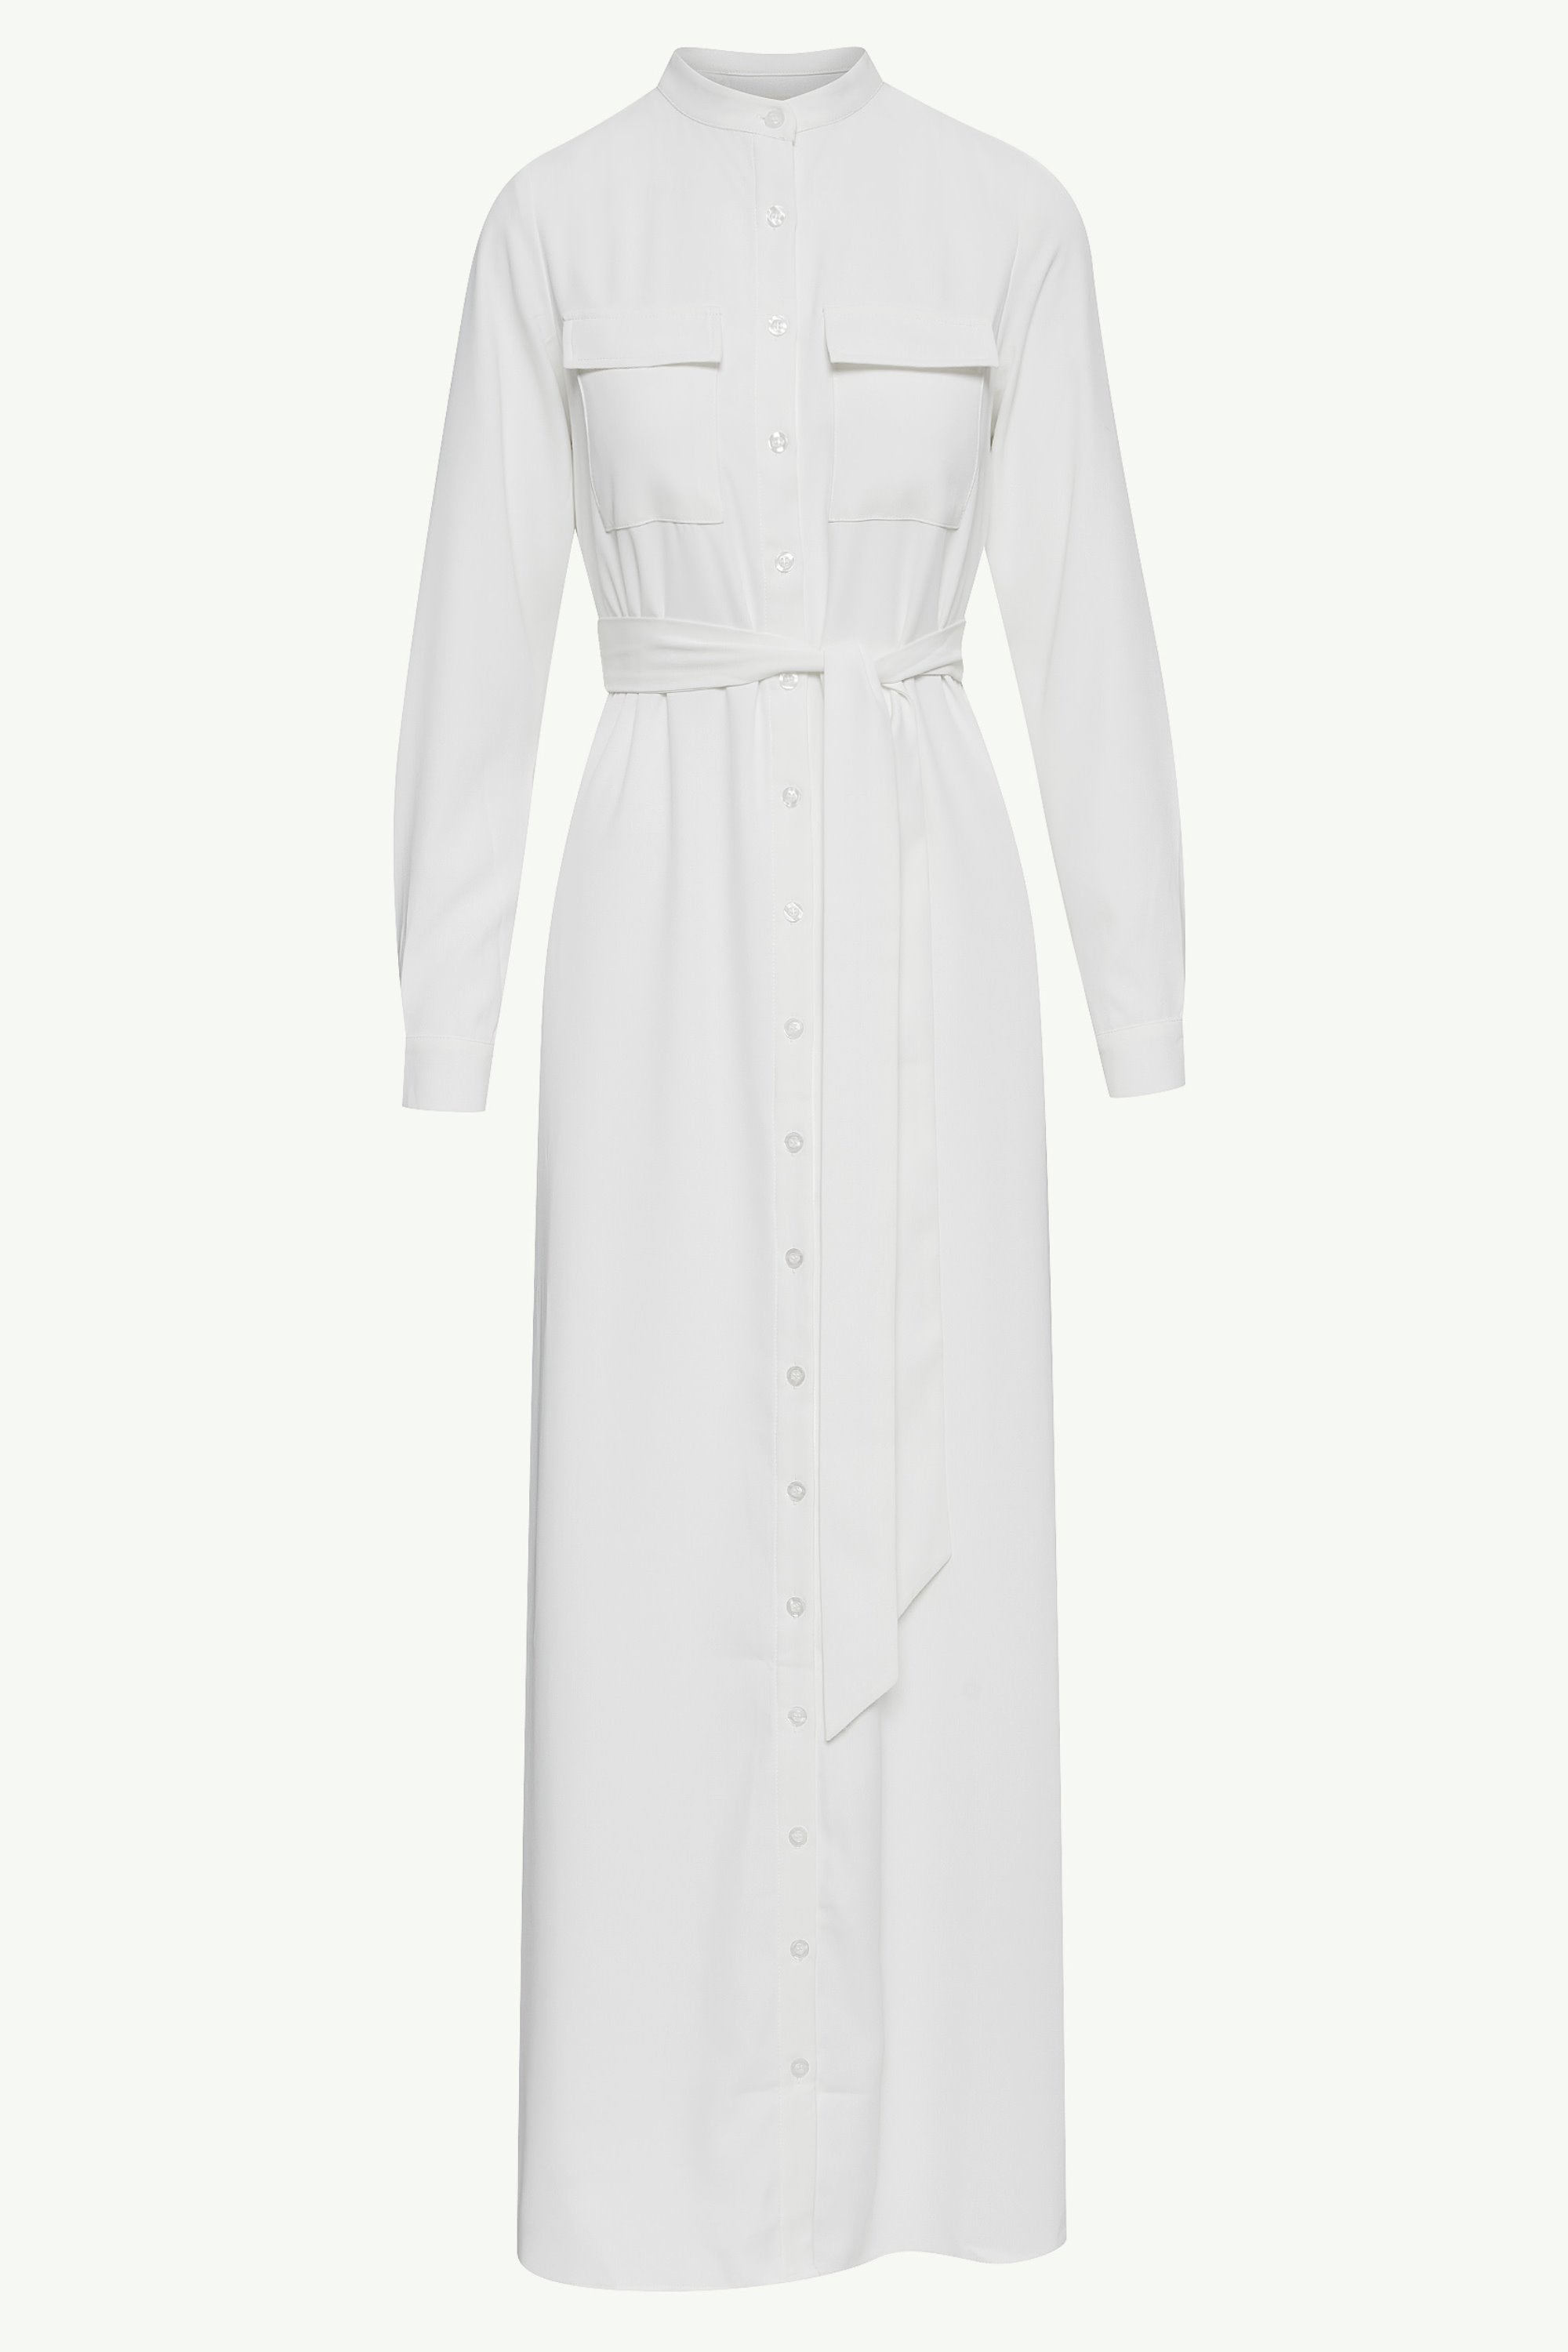 Olivia Button Down Utility Maxi Dress - White Clothing Veiled 